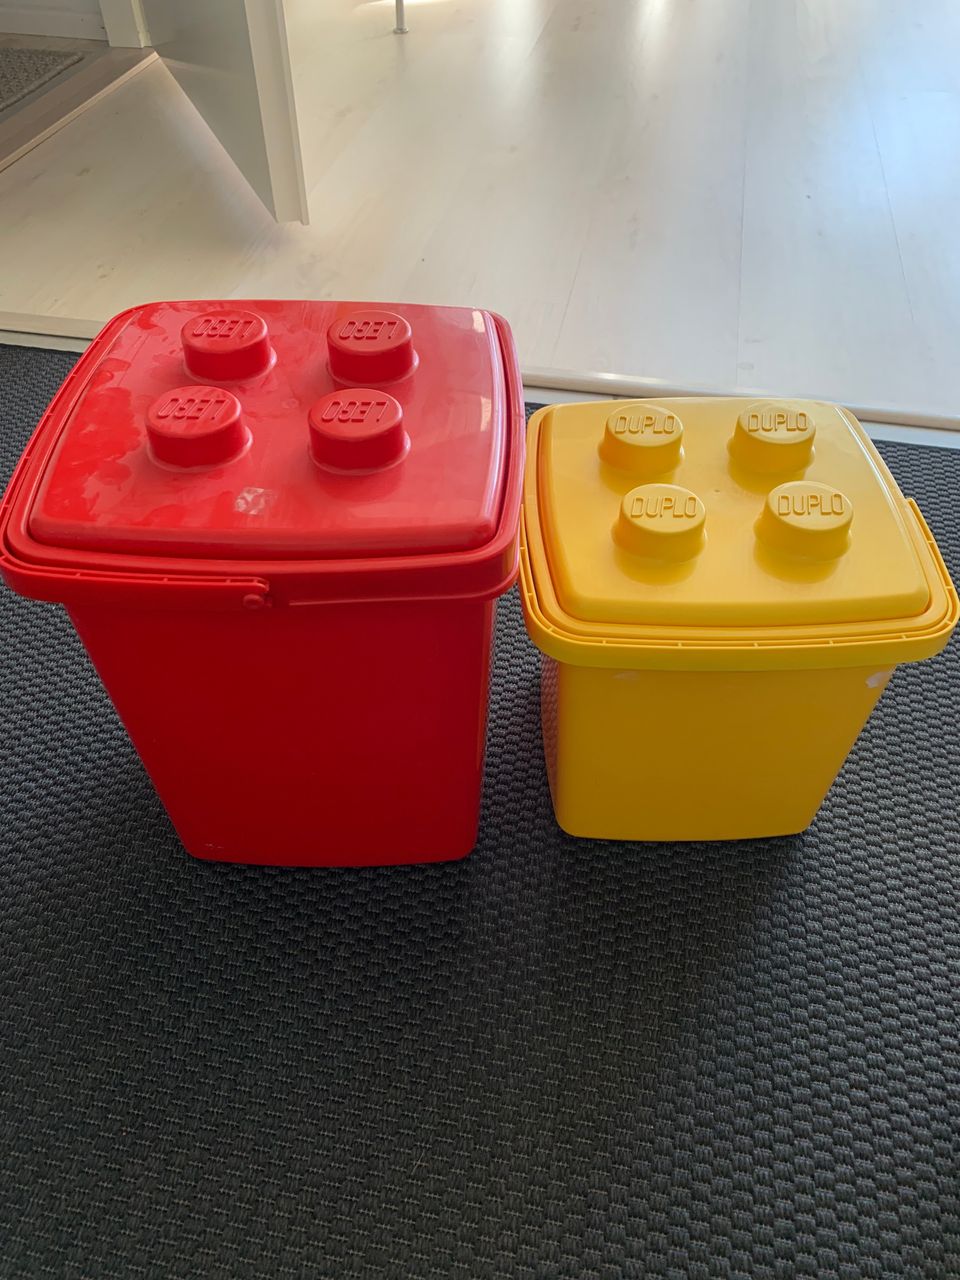 Lego ja duplo -laatikko